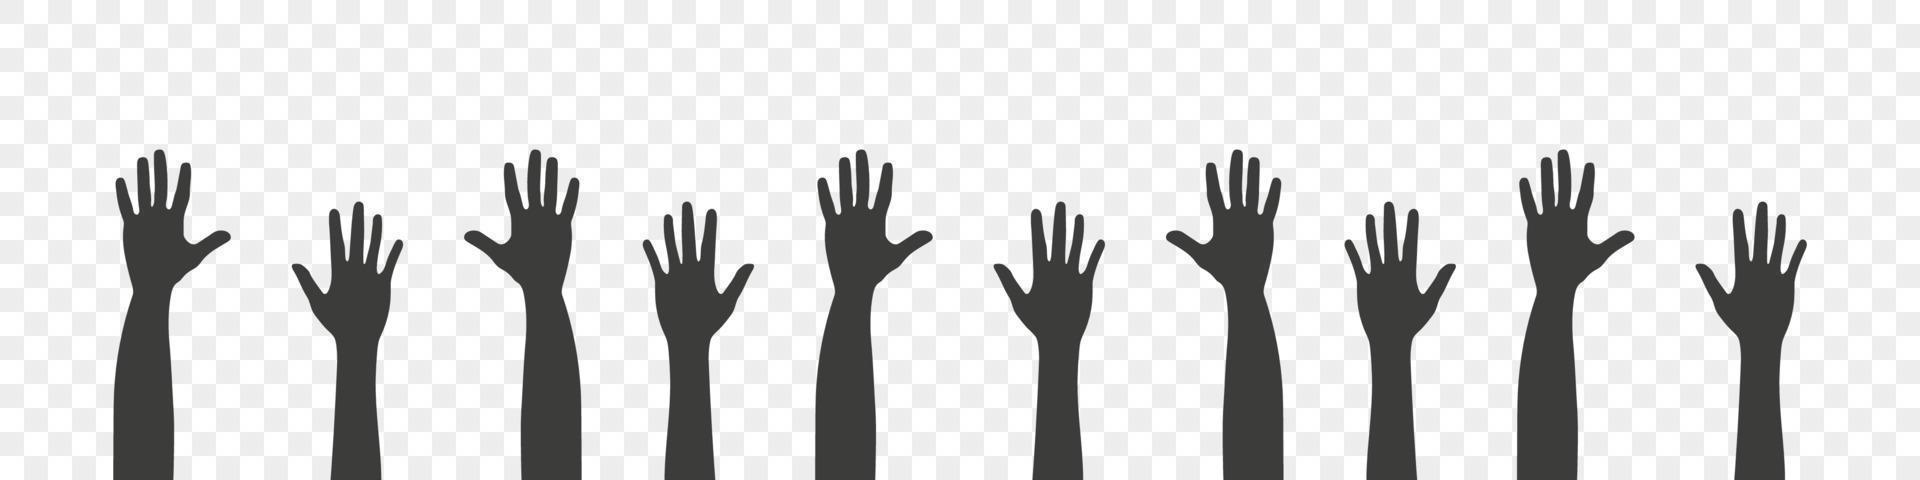 Uppfostrad händer. silhuetter av händer upp. lagarbete, samarbete, röstning, volontär konsert. vektor illustration